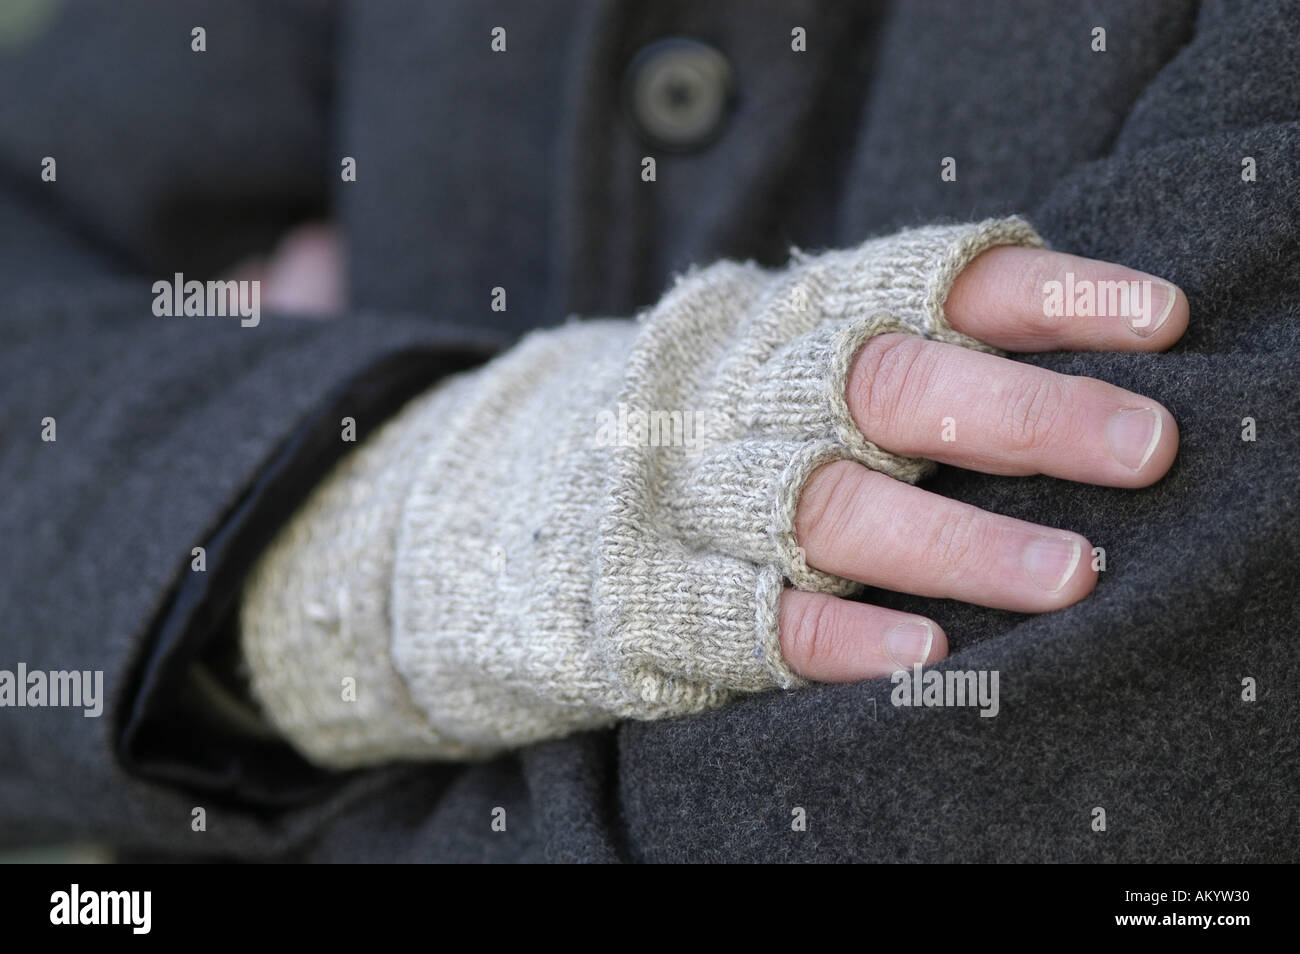 gestrickte Handschuhe fingerlose Geizhals Fäustlinge Wolle kalt Wärme  Winter Wetter Schnee Hände Frostschutz stricken Stockfotografie - Alamy